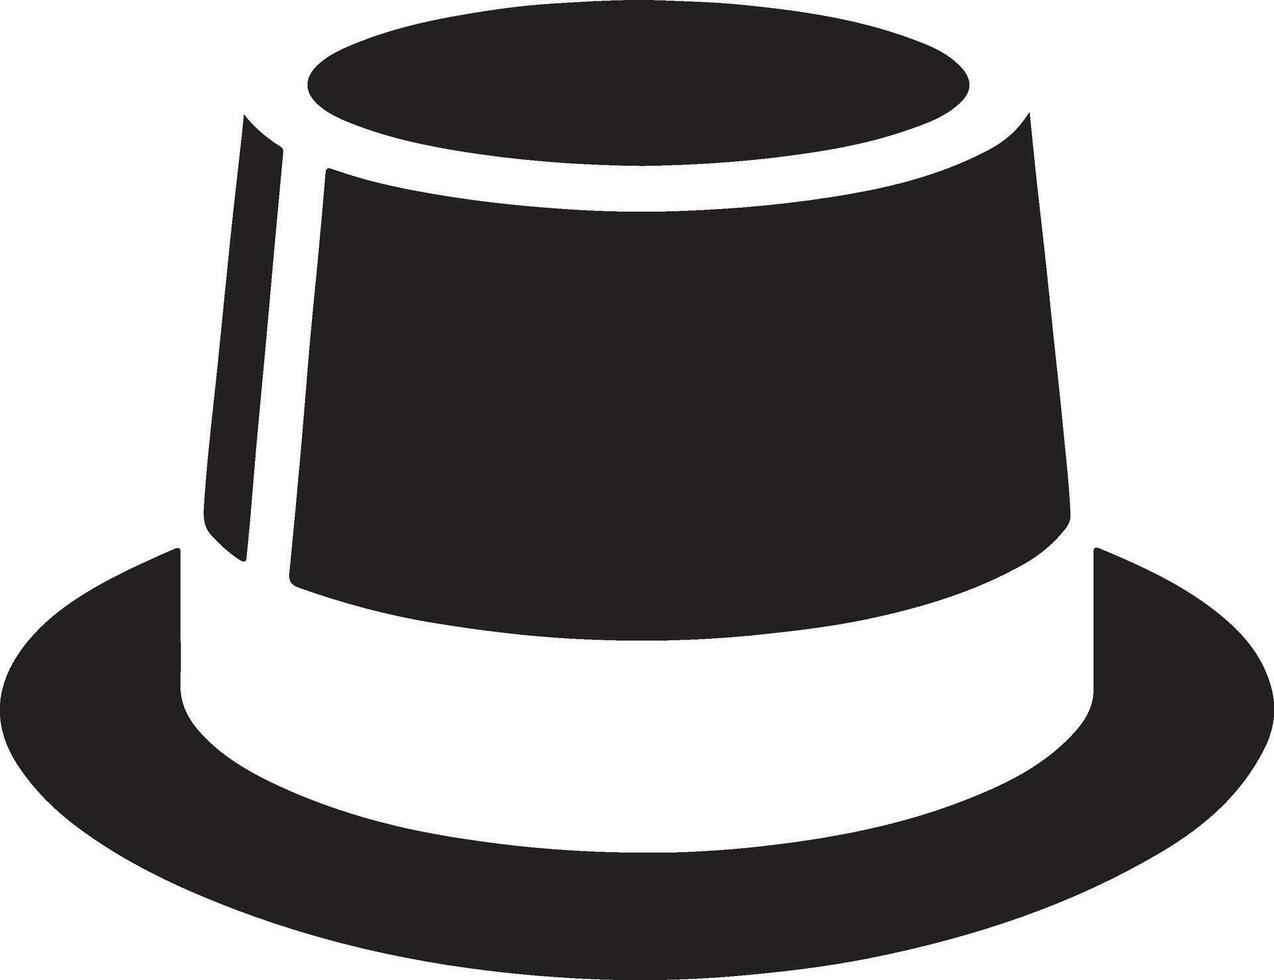 minimal Retro Hat icon, clipart, symbol, black color silhouette 18 vector